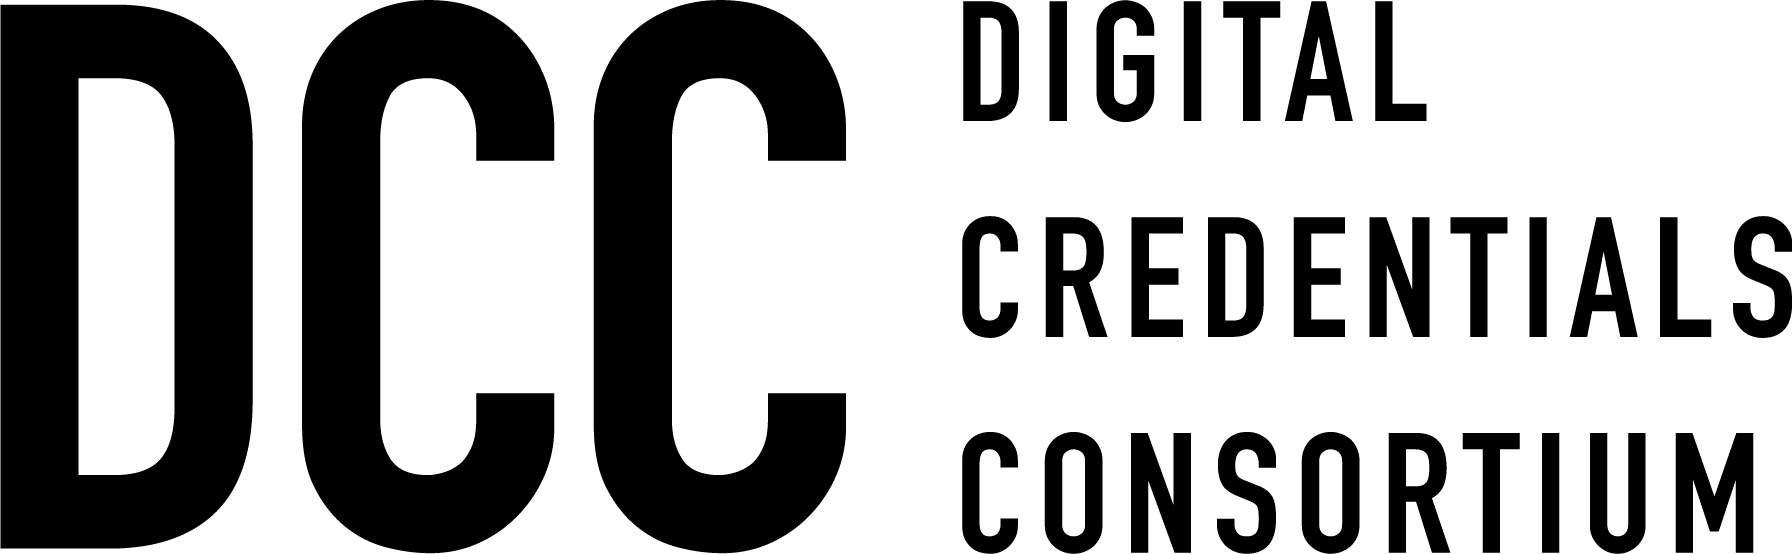 Digital Credenials Consortium logo